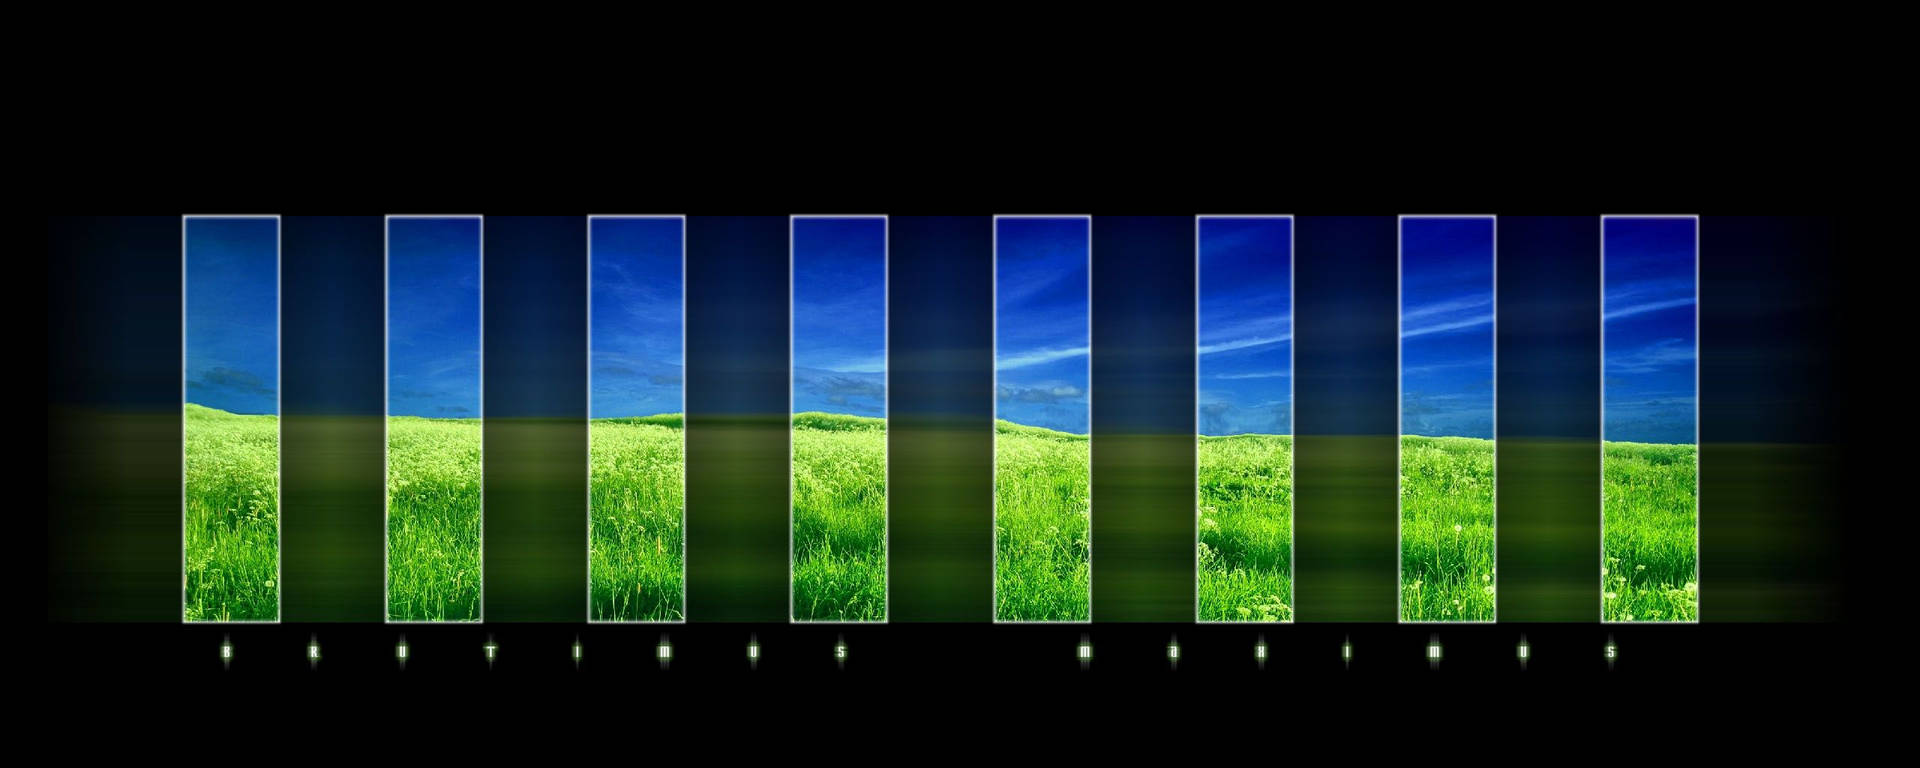 Einschwarzer Bildschirm Mit Grünem Gras Und Blauem Himmel Wallpaper